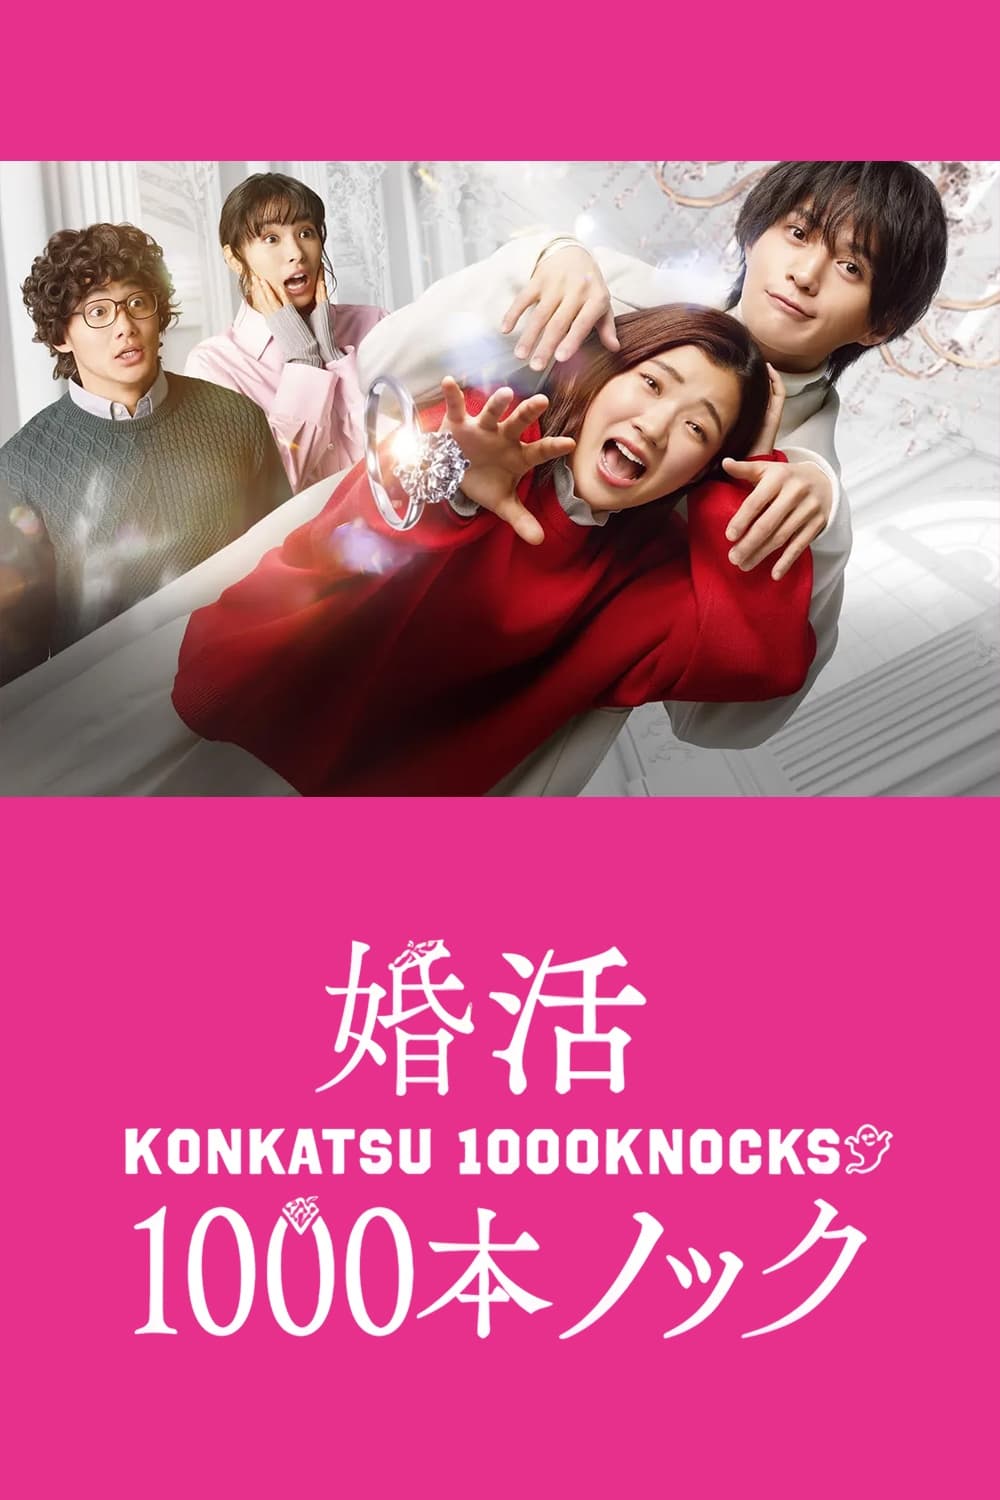 Konkatsu 1000 Knock